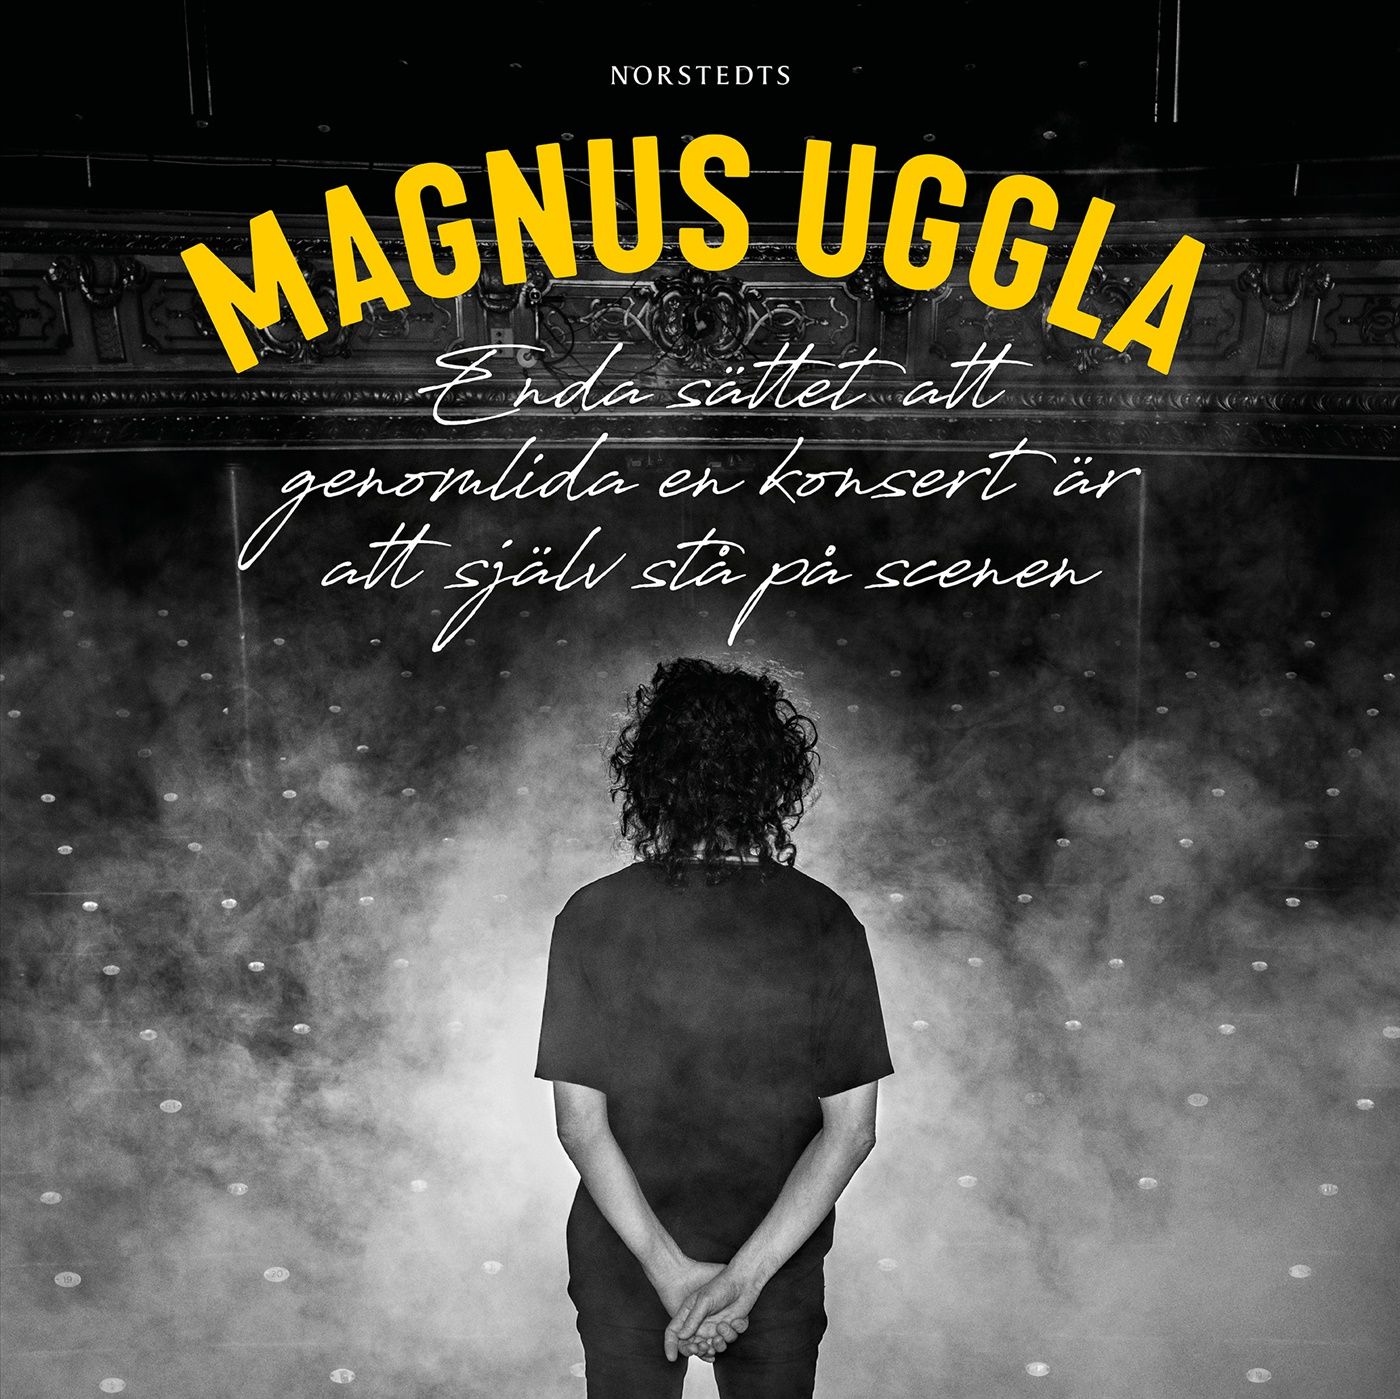 Enda sättet att genomlida en konsert är att själv stå på scenen, ljudbok av Magnus Uggla